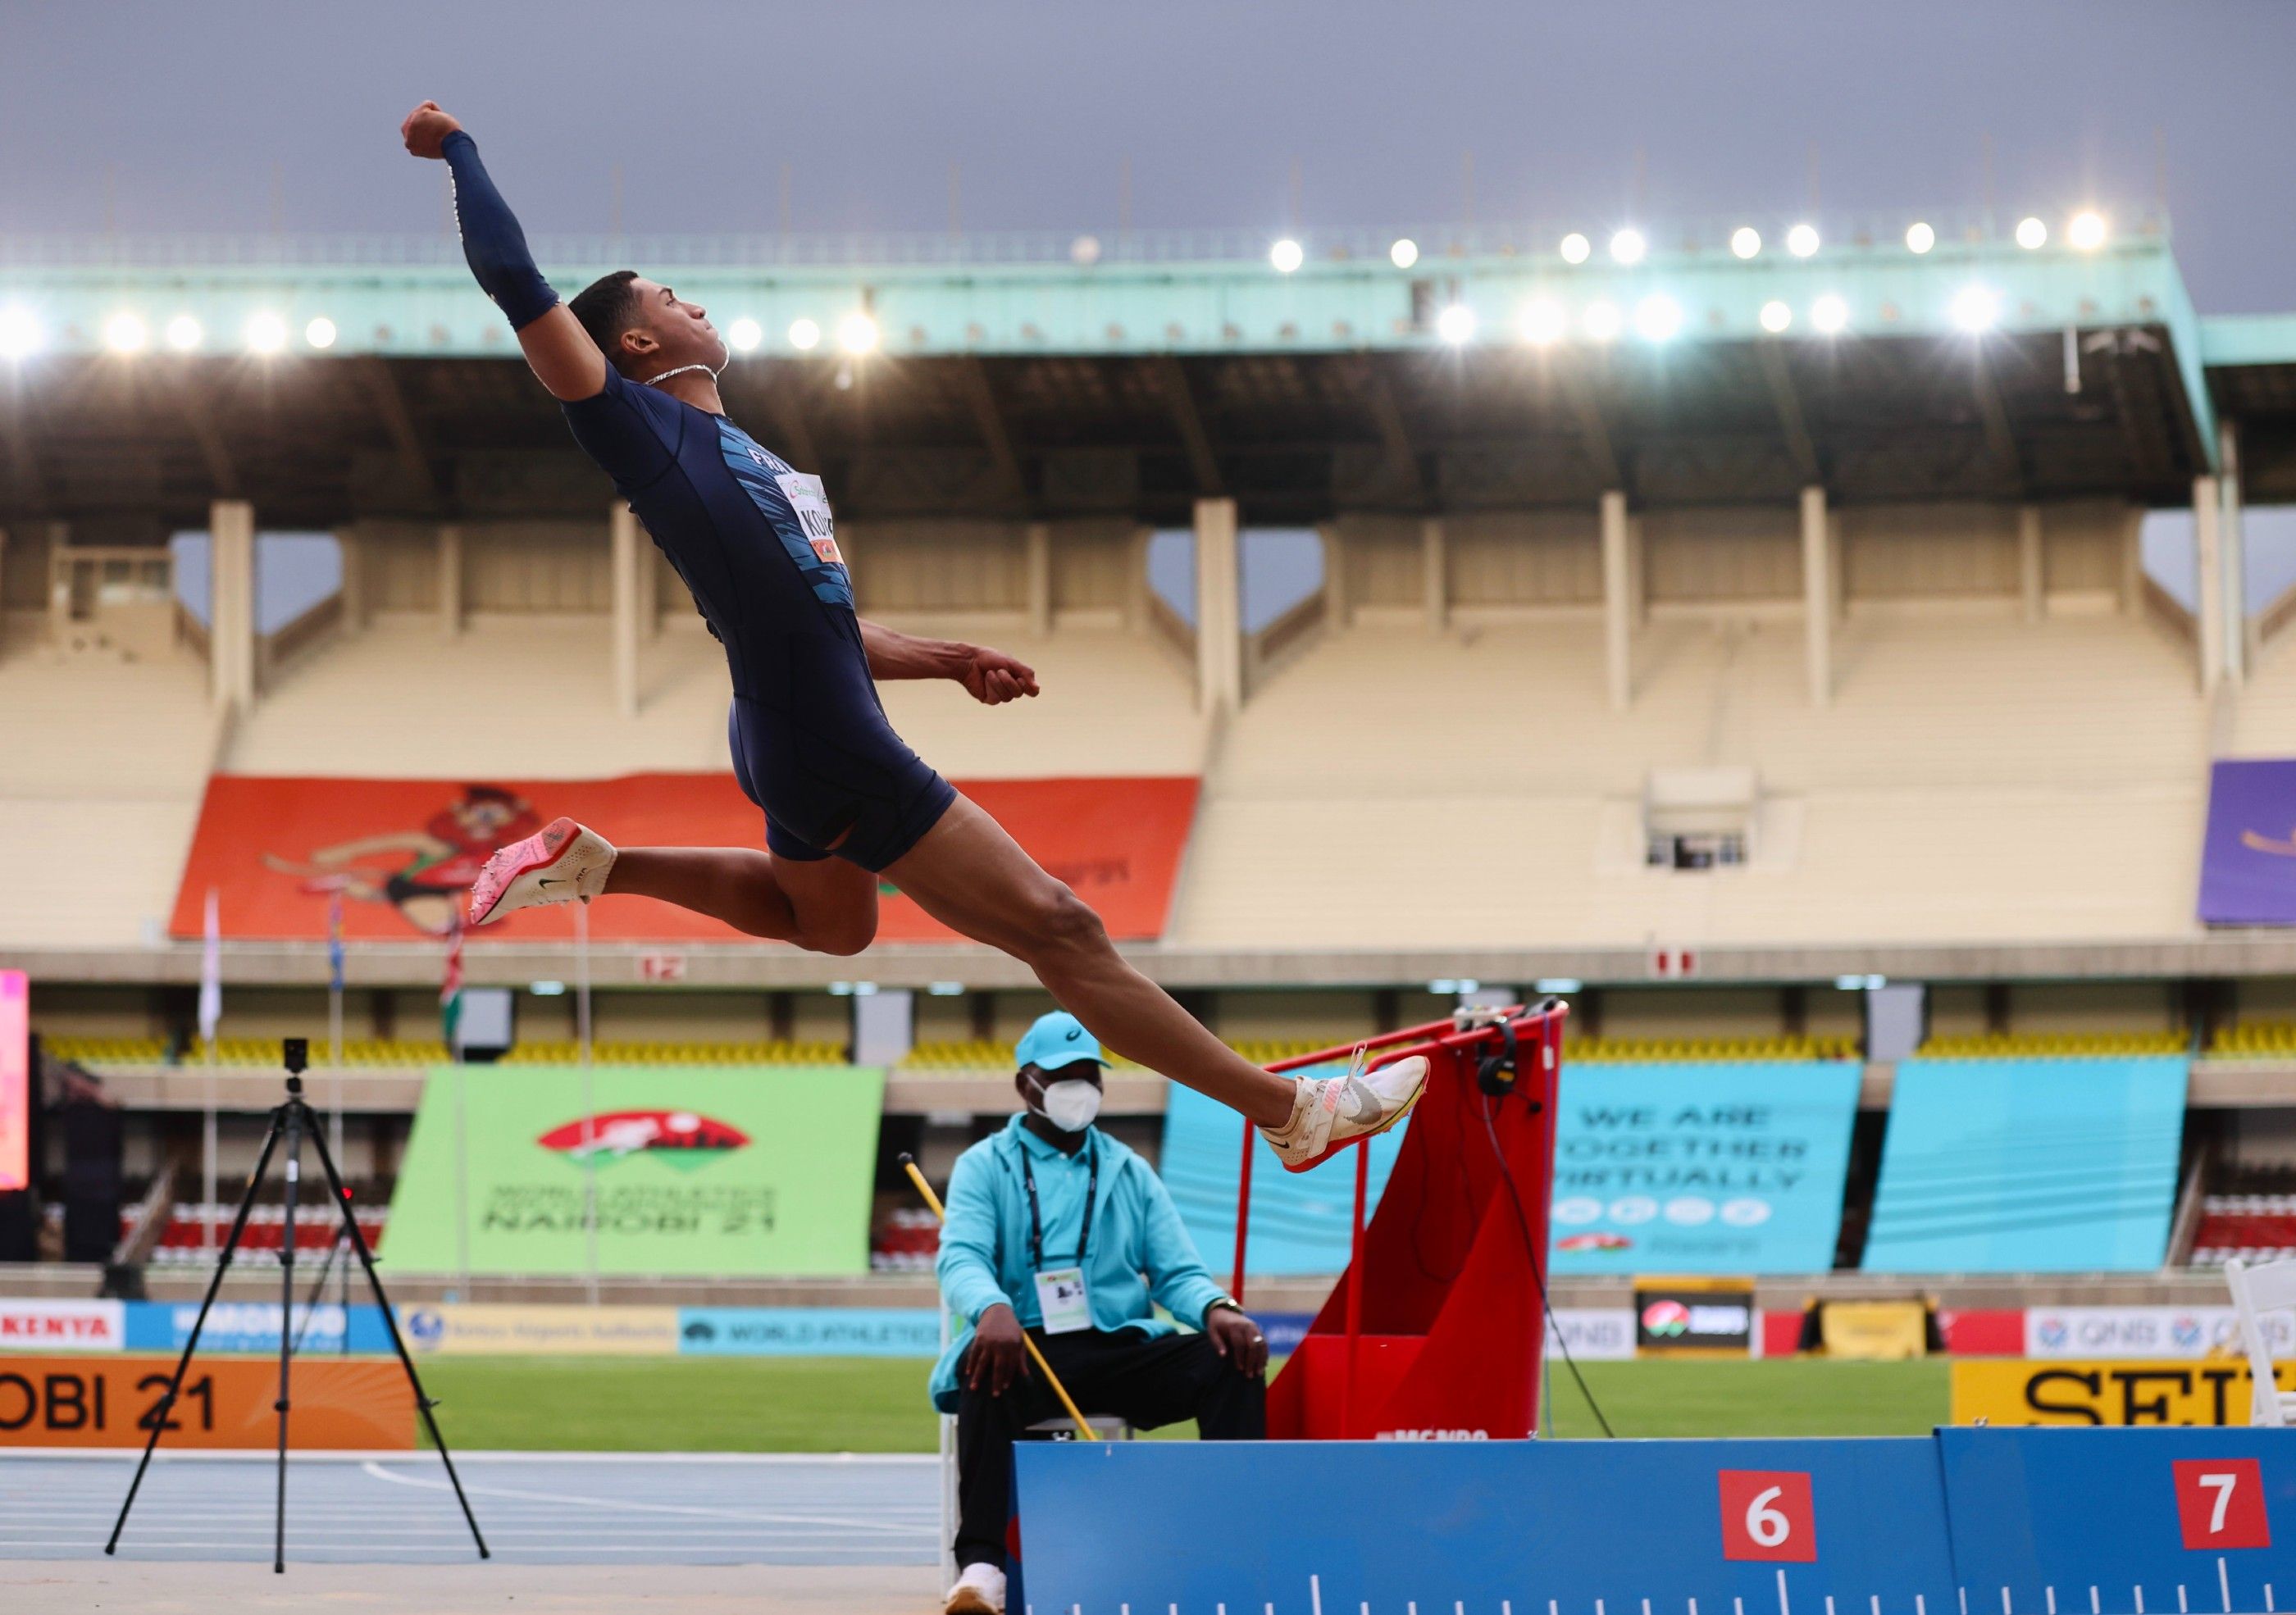 Erwan Konate soars to world U20 long jump gold in Nairobi